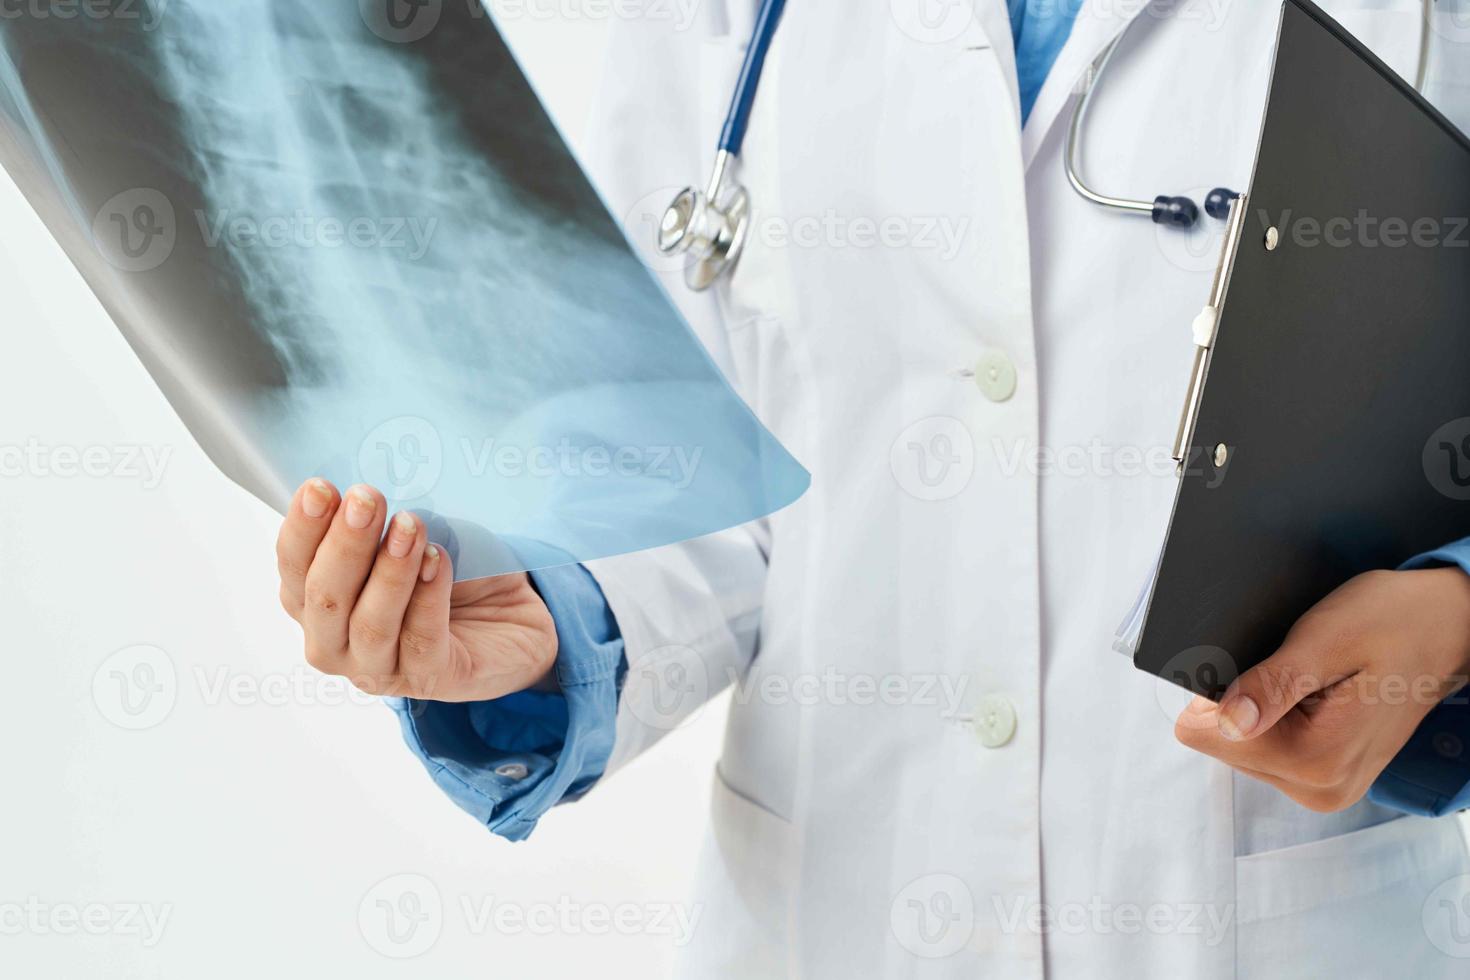 medico nel bianca cappotto ilinovka istantanea ospedale Salute visita medica professionale foto